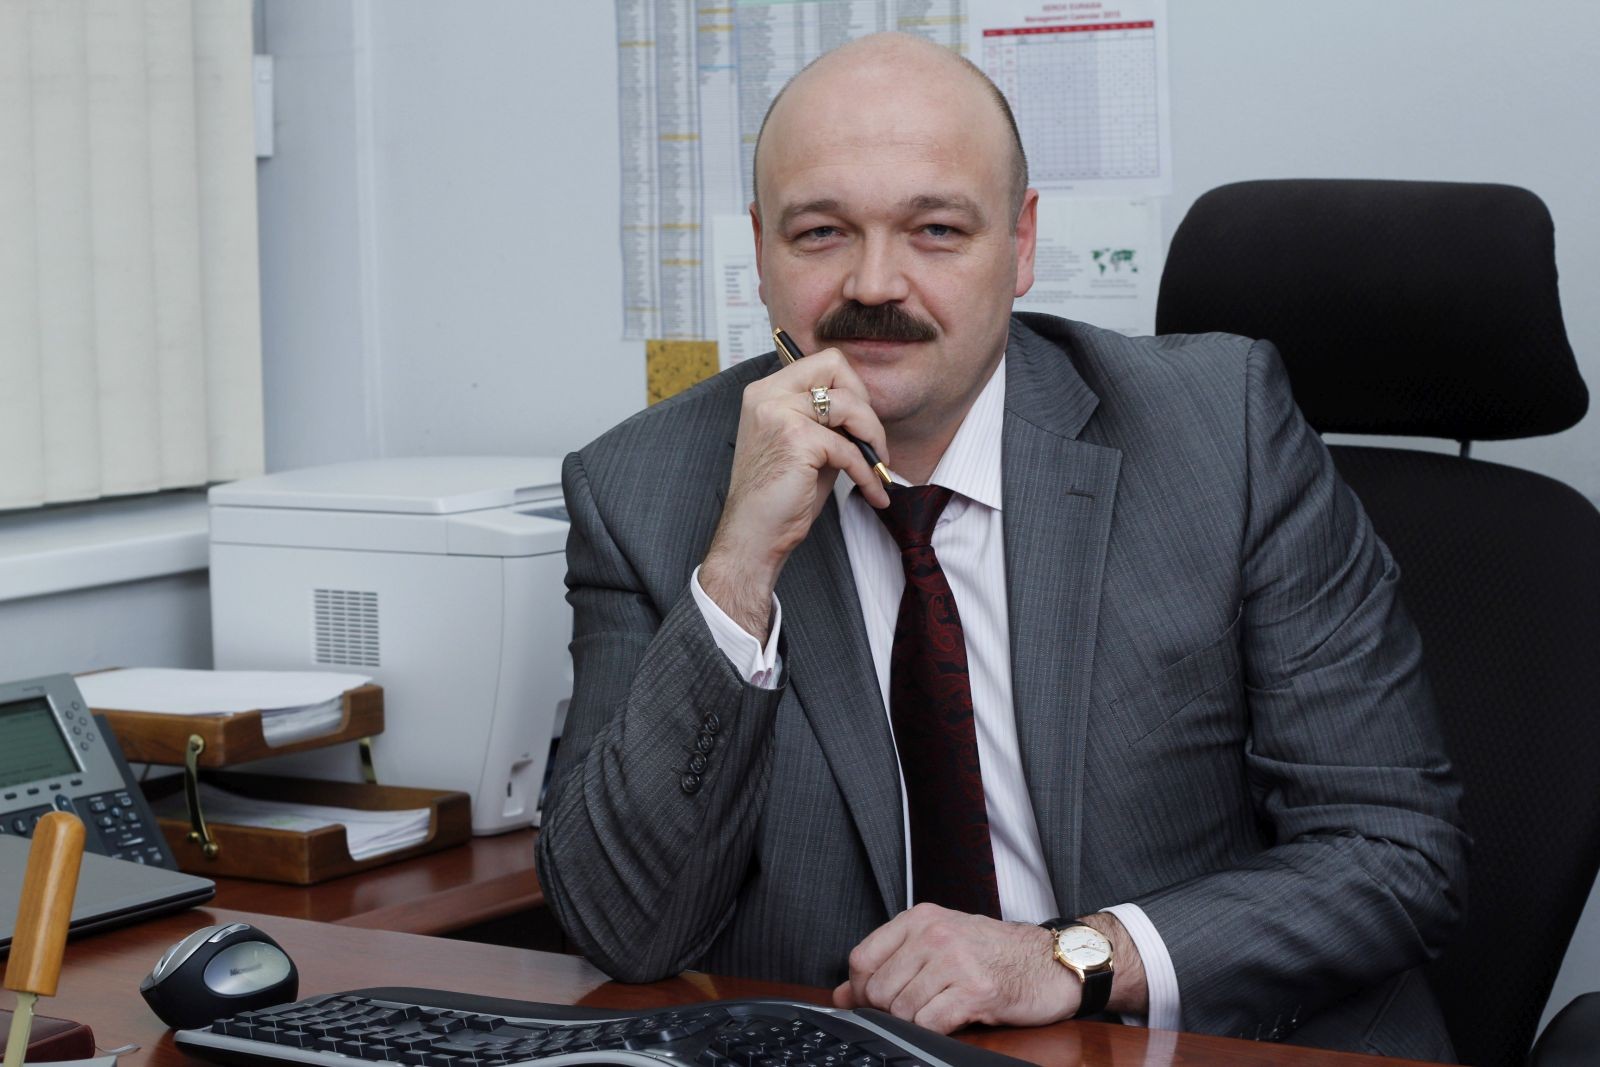 Иван Иванов возглавил департамент партнёрских операций «Xerox Россия»